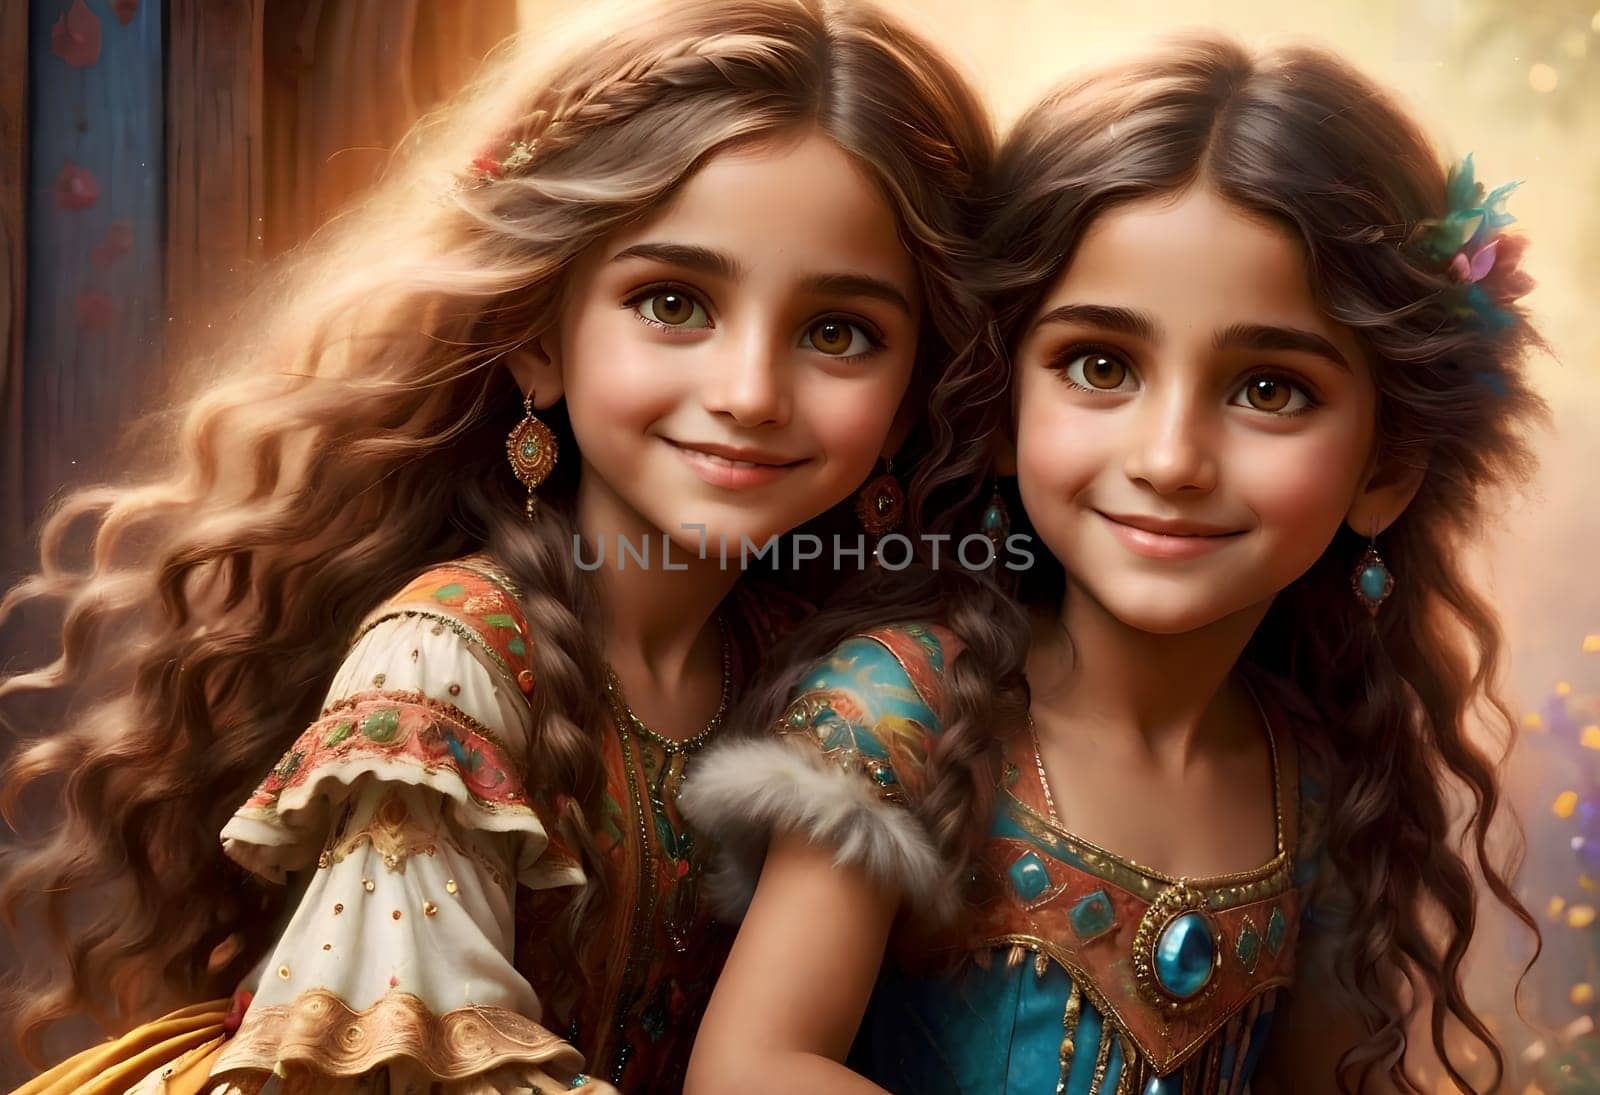 Beautiful gypsy children in elegant gypsy costumes by Rawlik